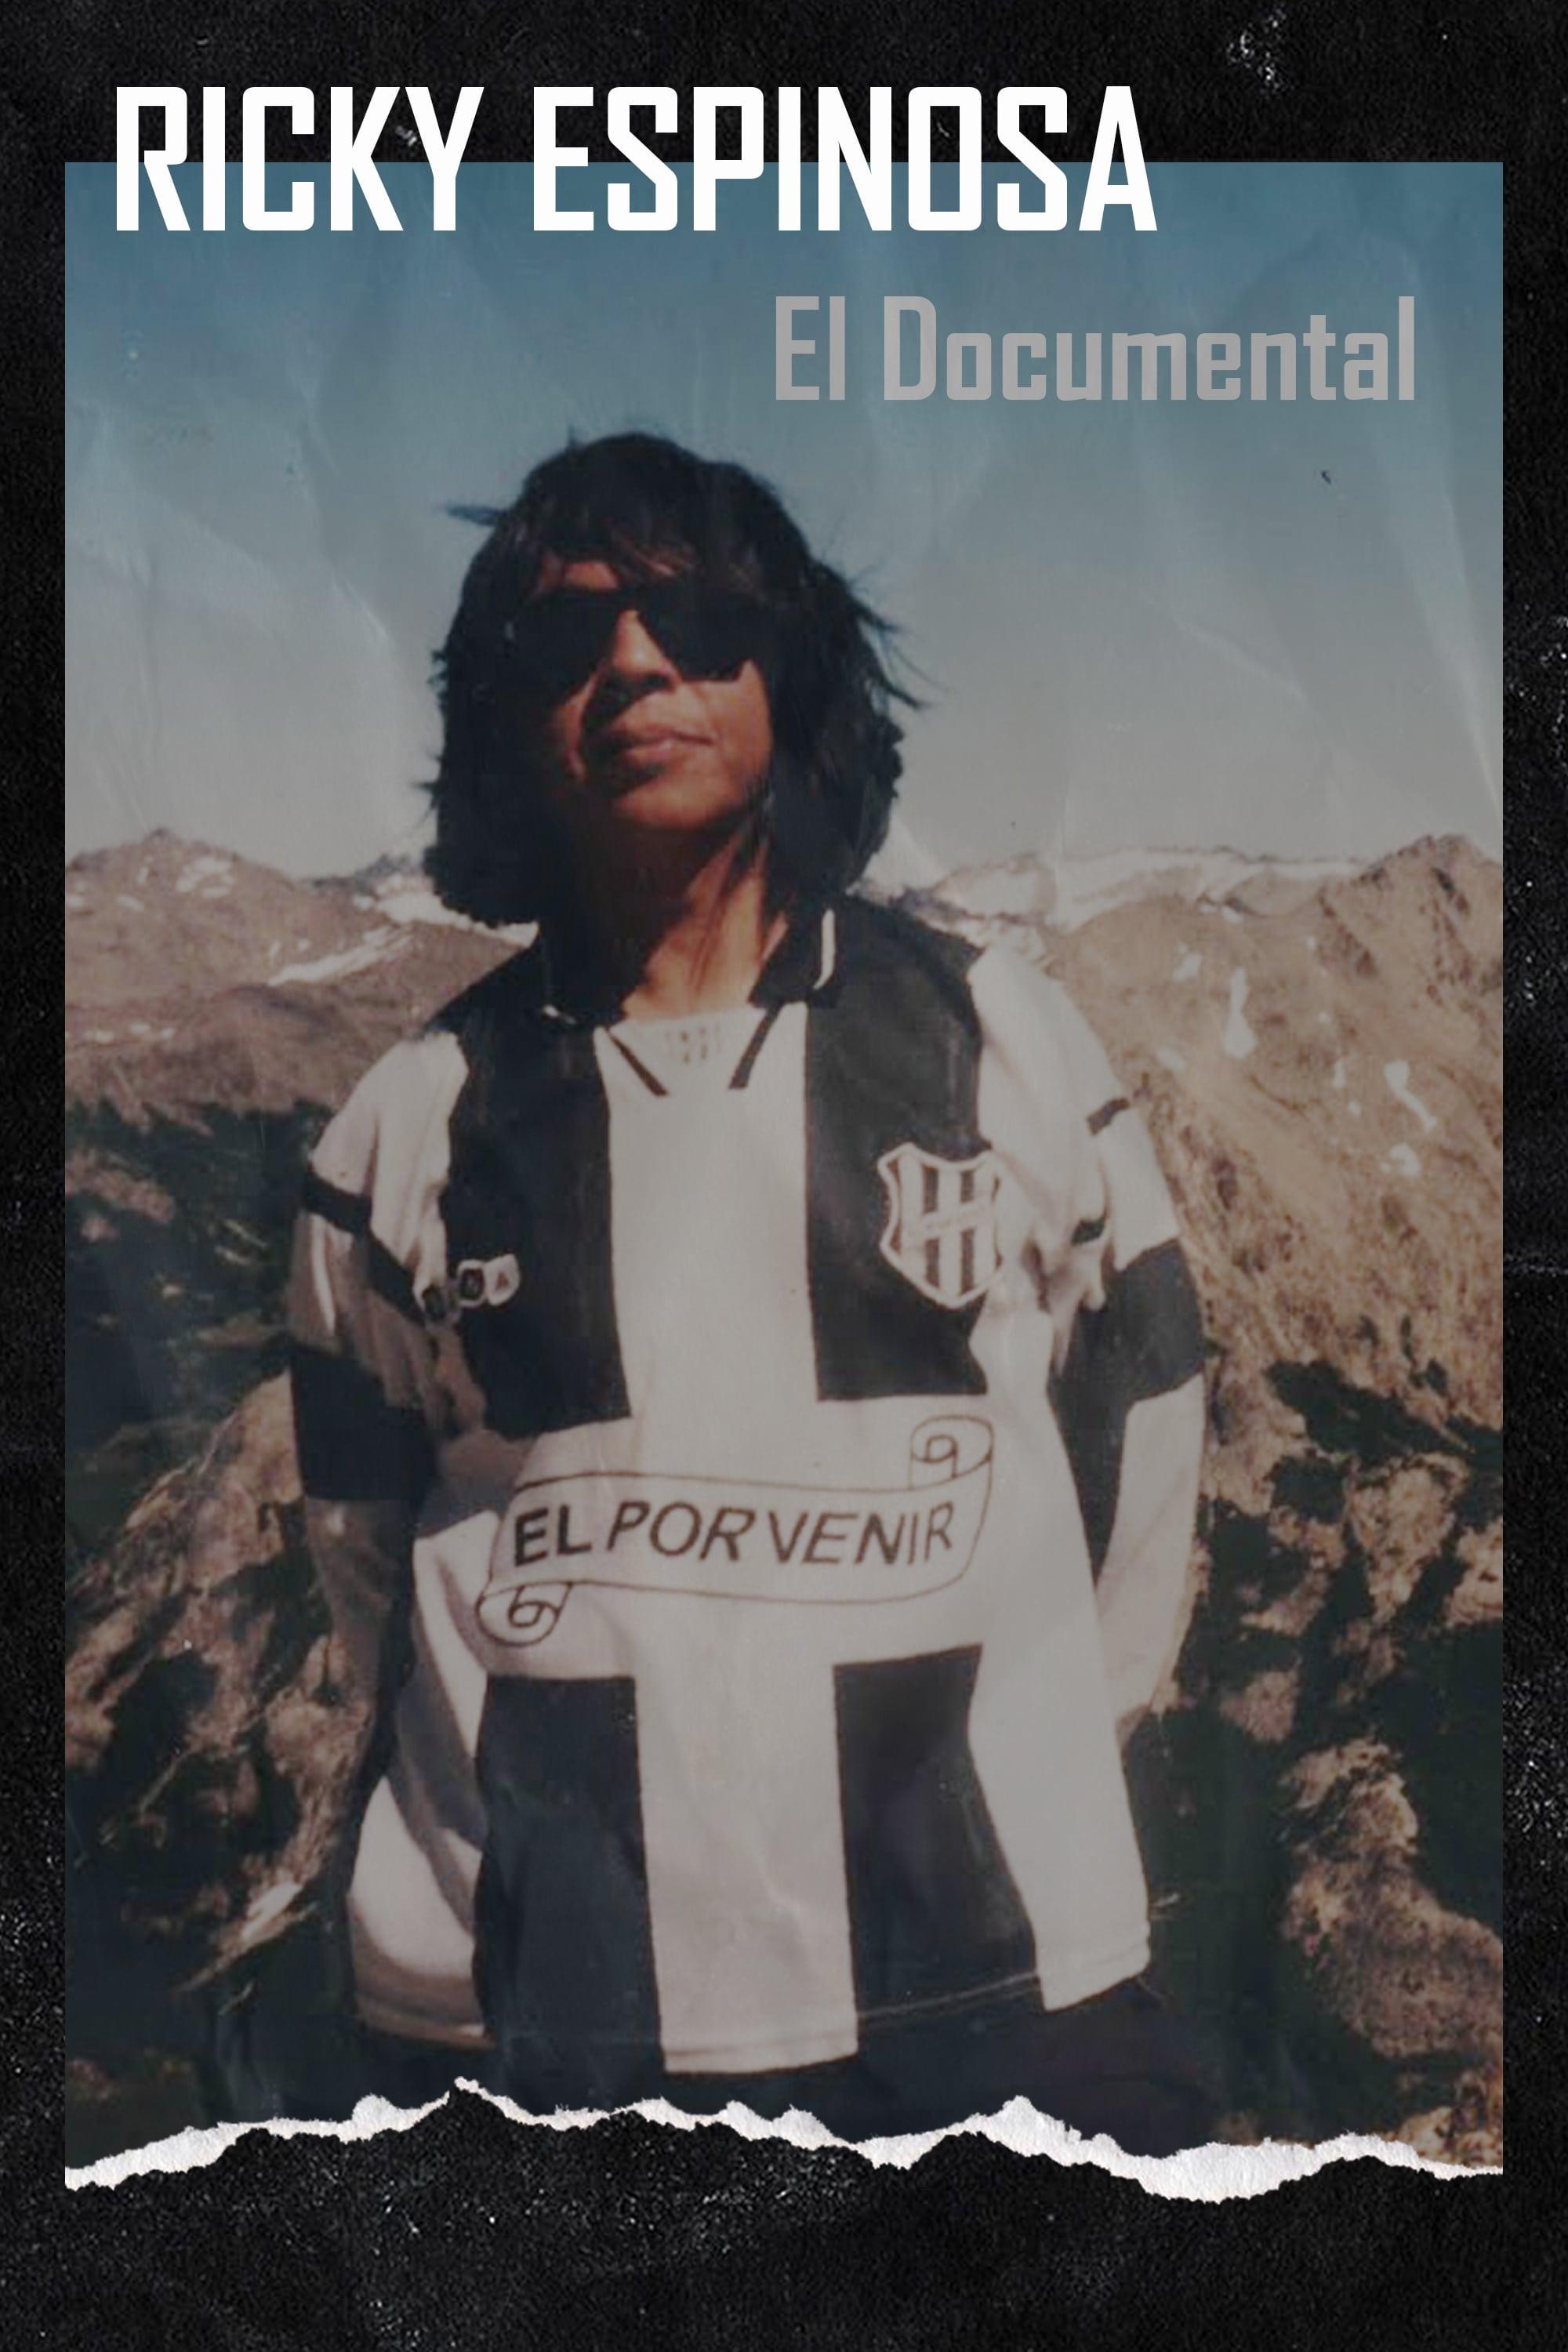 Ricky Espinosa: El Documental poster